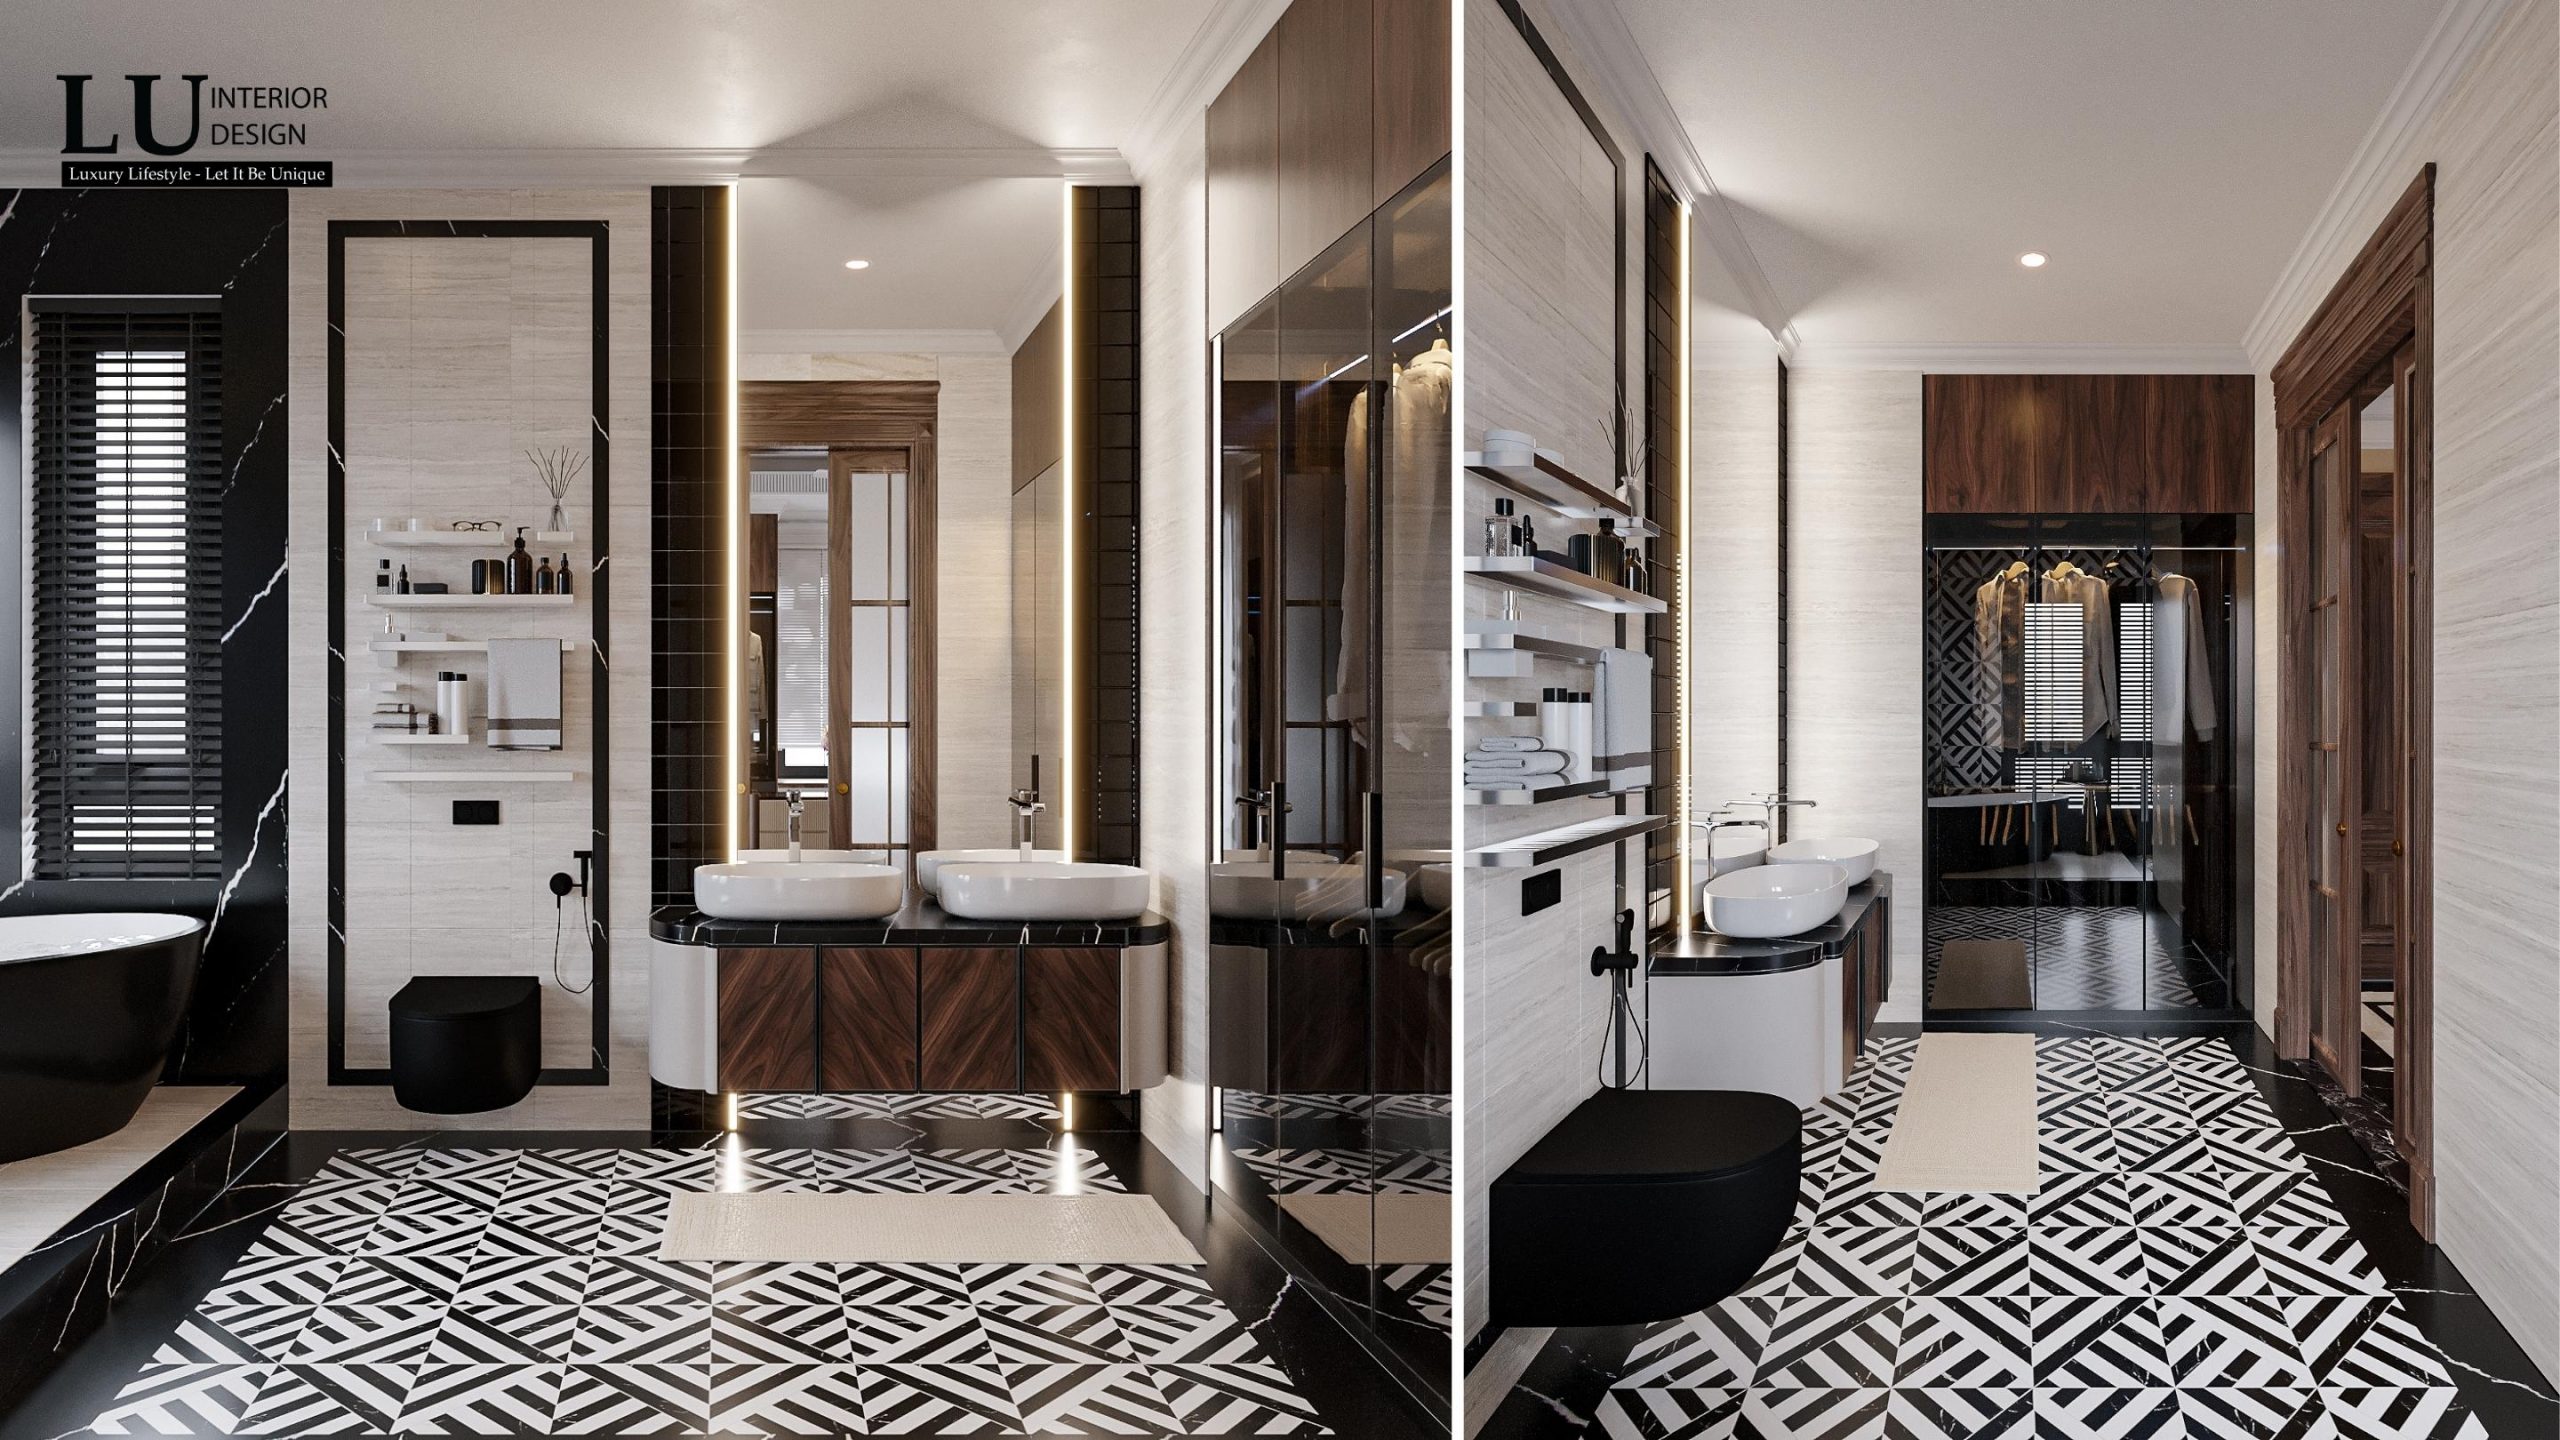 Tone đen trắng, điểm xuyết màu gỗ tạo sự sang trọng, nội thất bố trí khoa học, thuận tiện cho việc sử dụng phòng chức năng | Dự án Villa Quận 9 - LU Design thực hiện